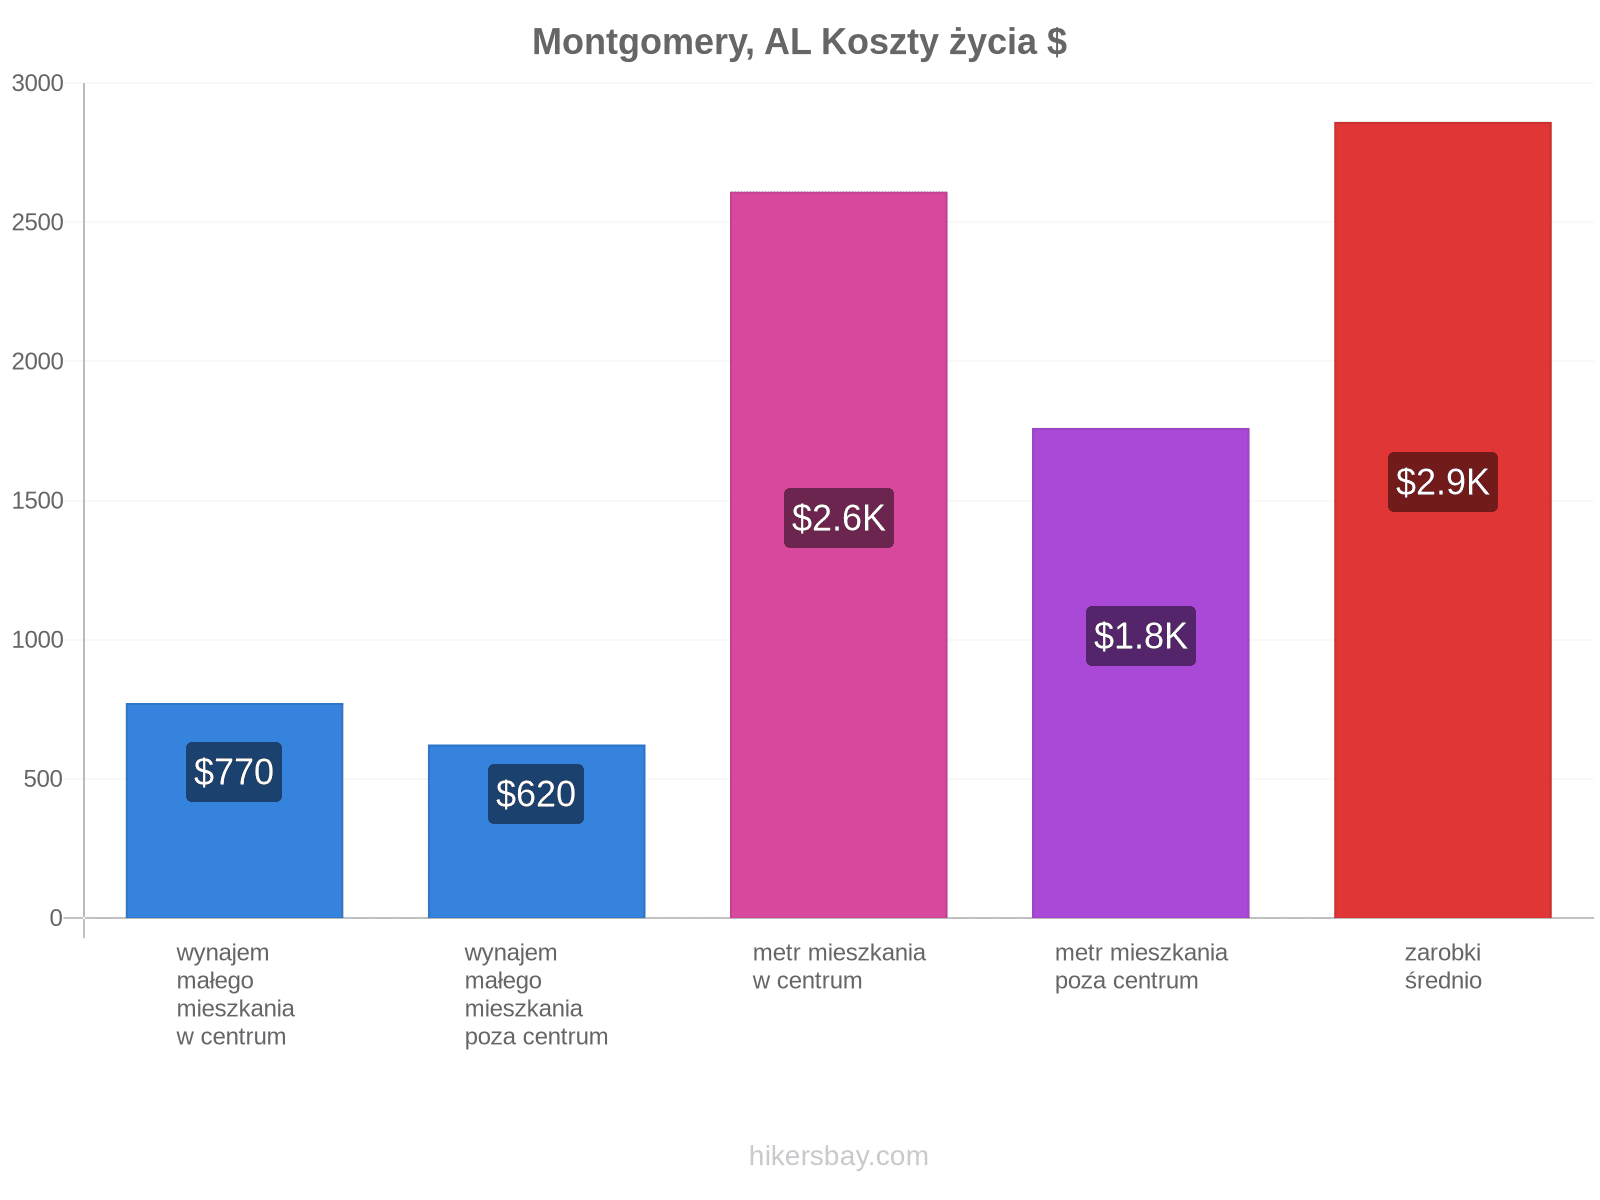 Montgomery, AL koszty życia hikersbay.com